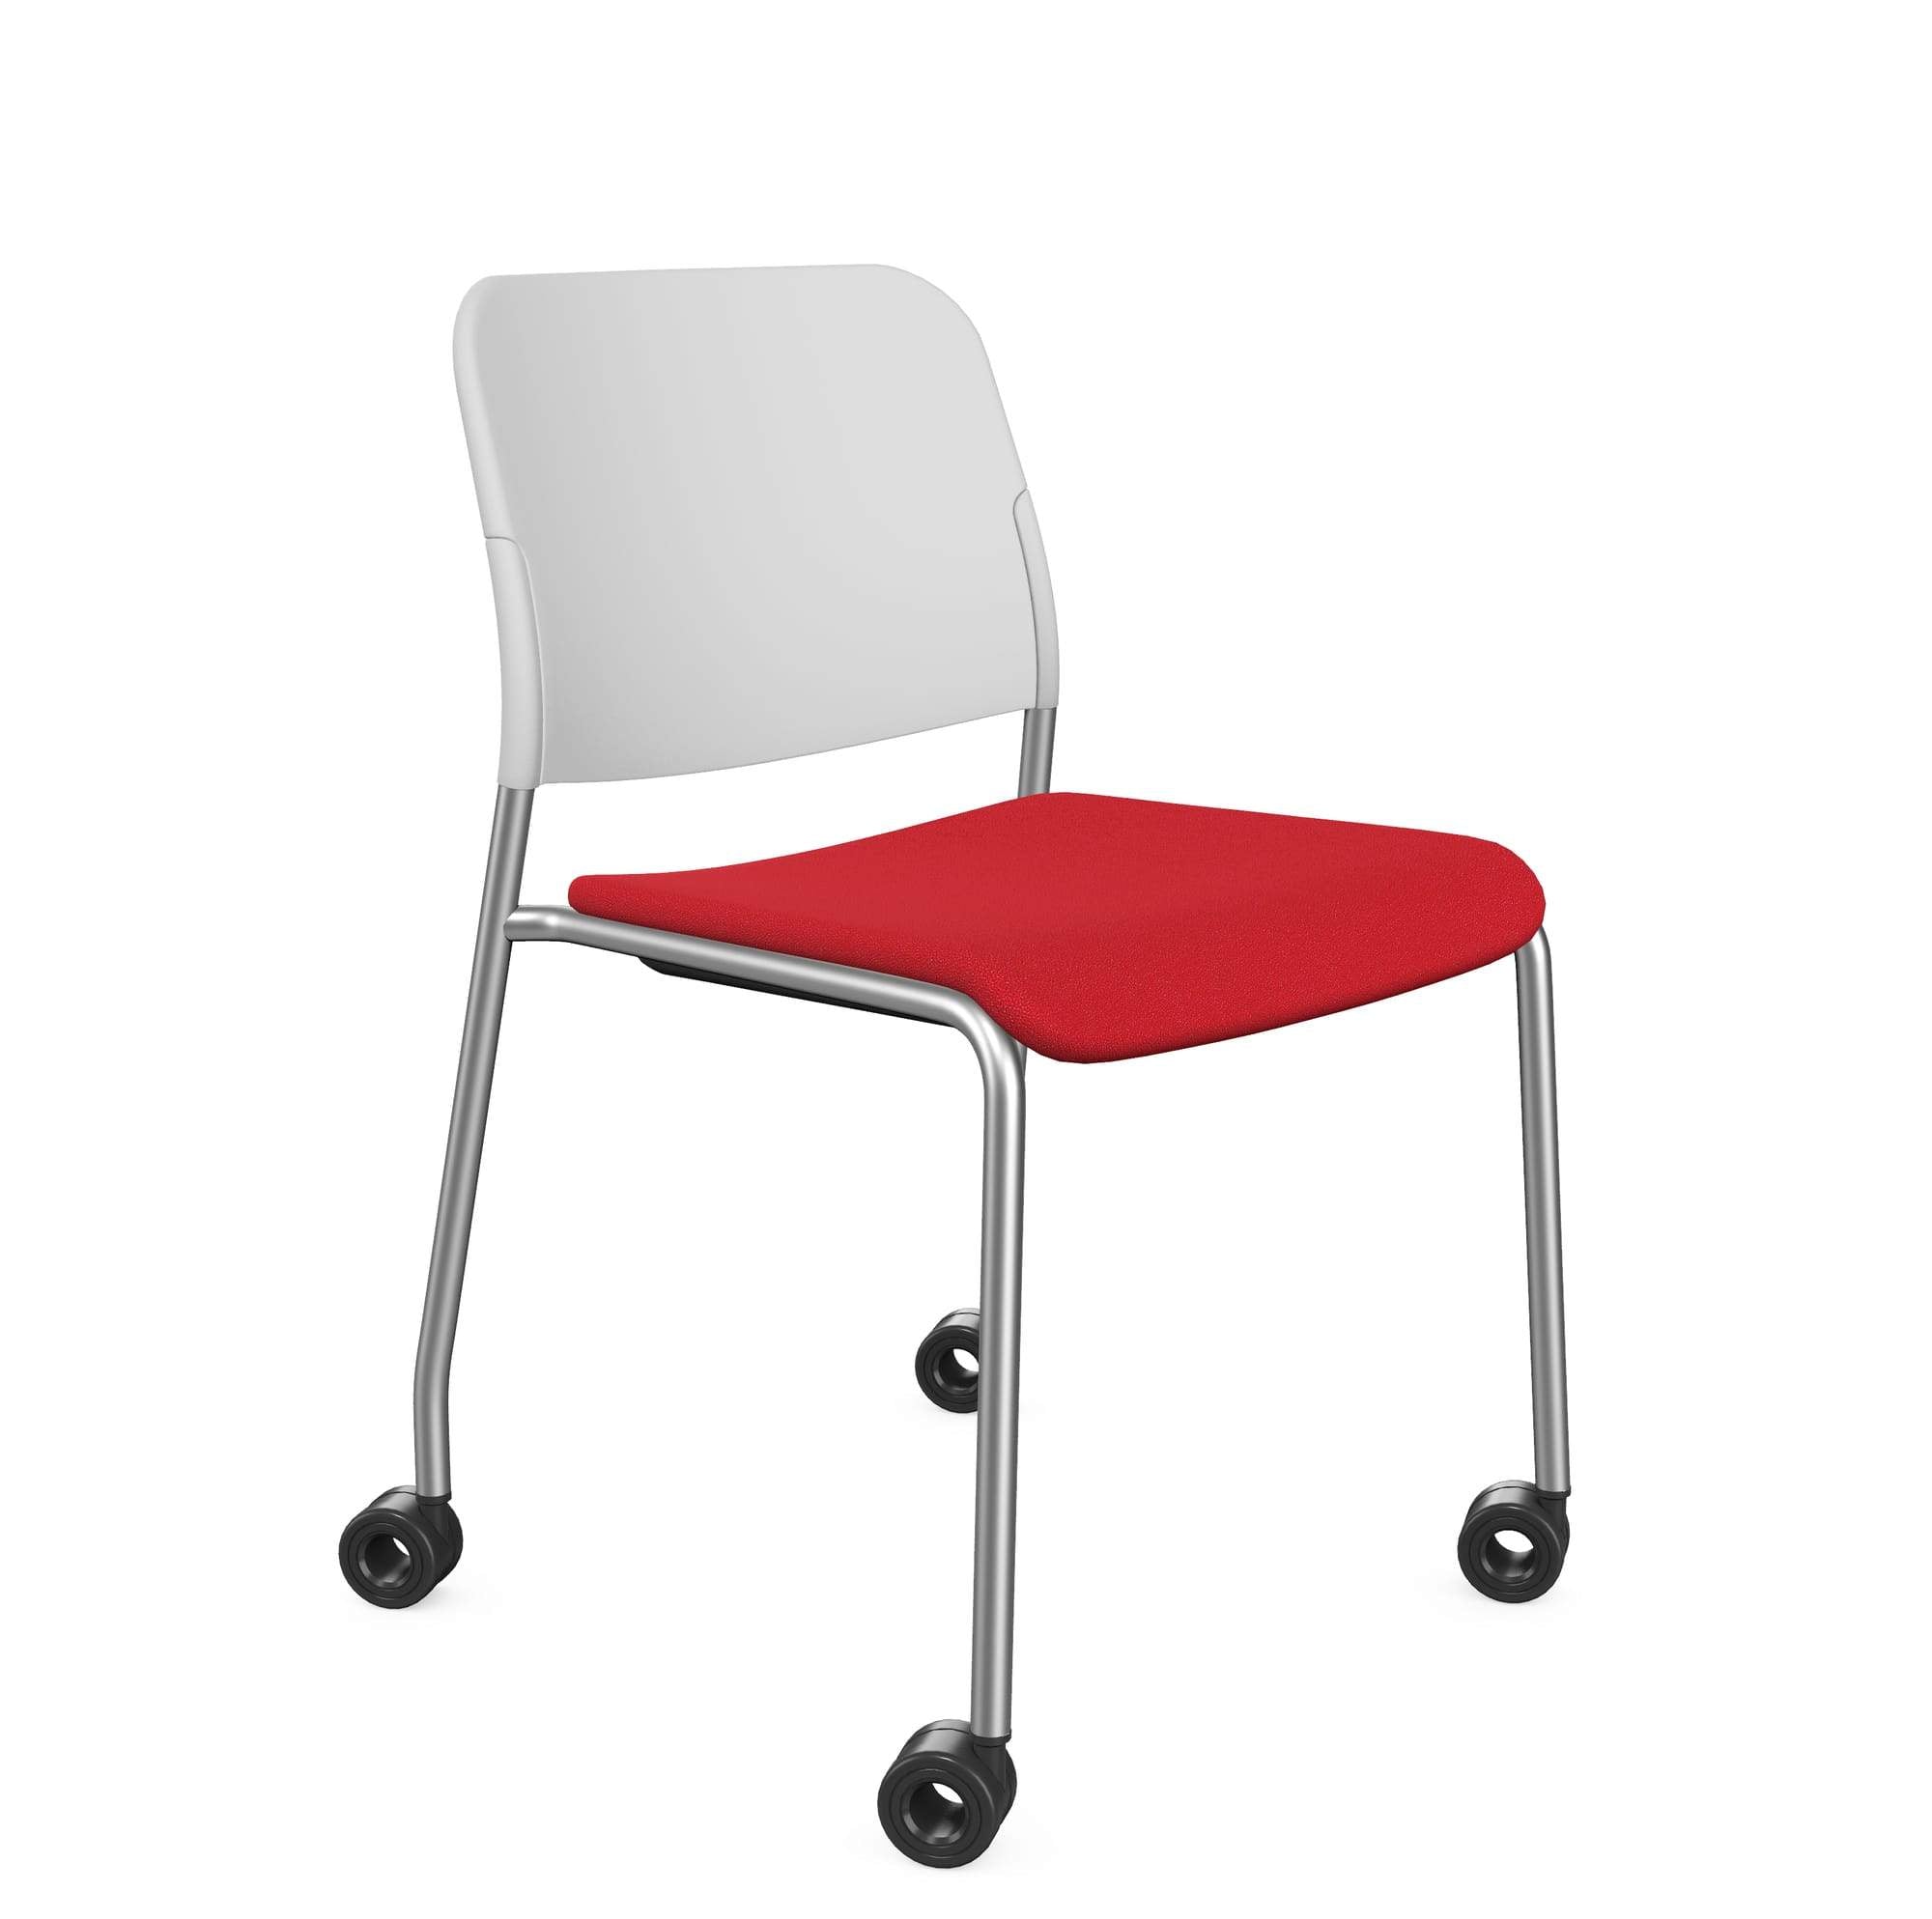 Zoo Upholstered Seat and Plastic Backrest Chair, 4-Legged Frame on Castors - Model 502HC